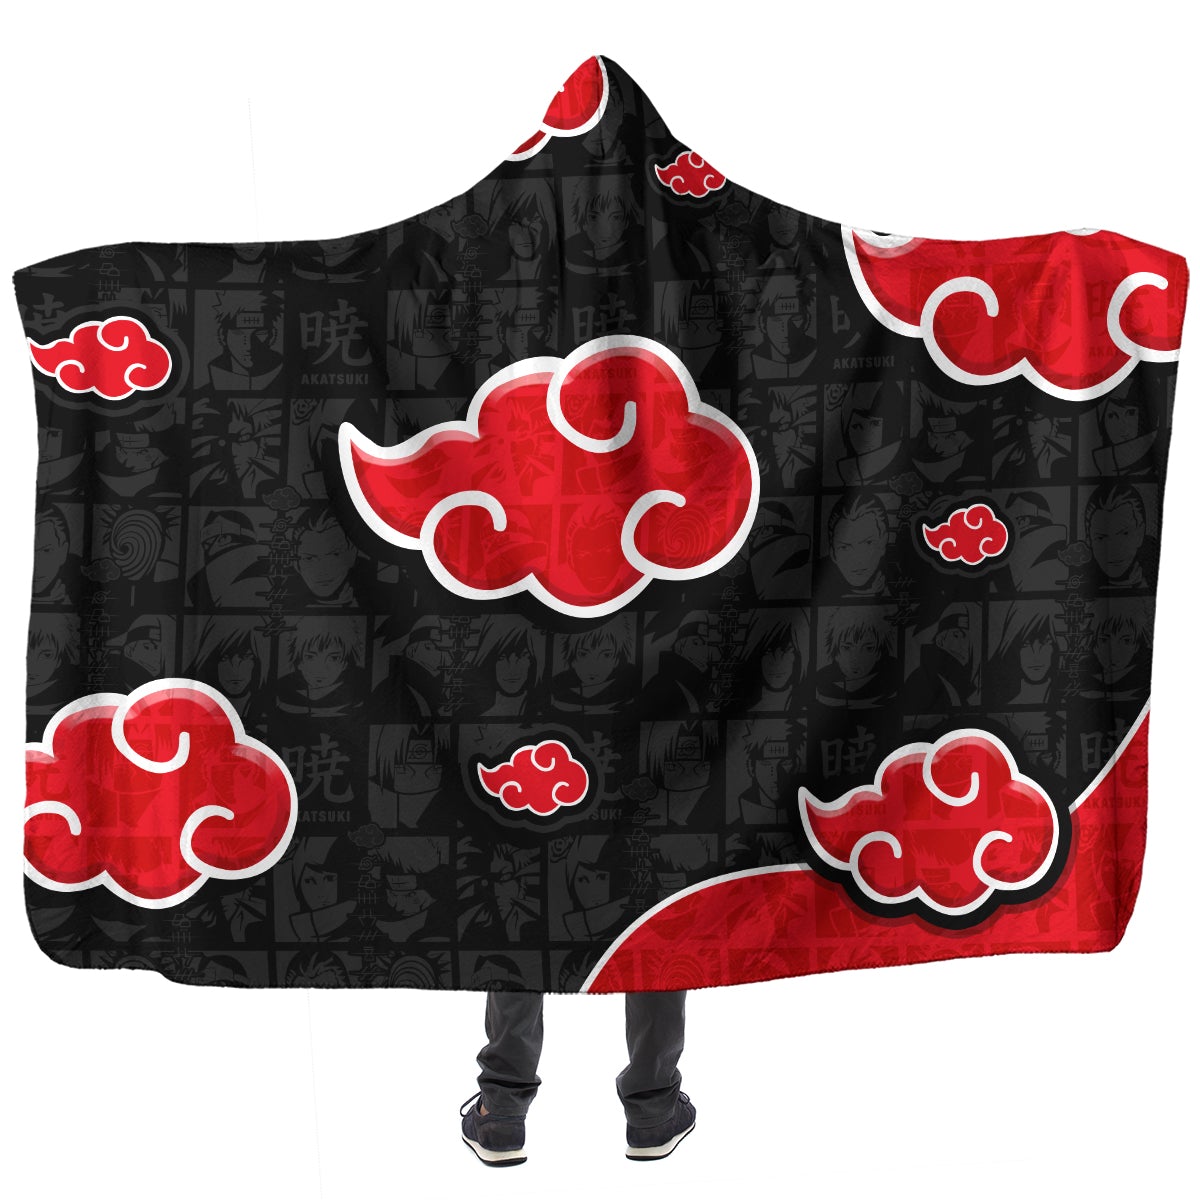 akatsuki gang hooded blanket 686506 - Jacksepticeye Shop